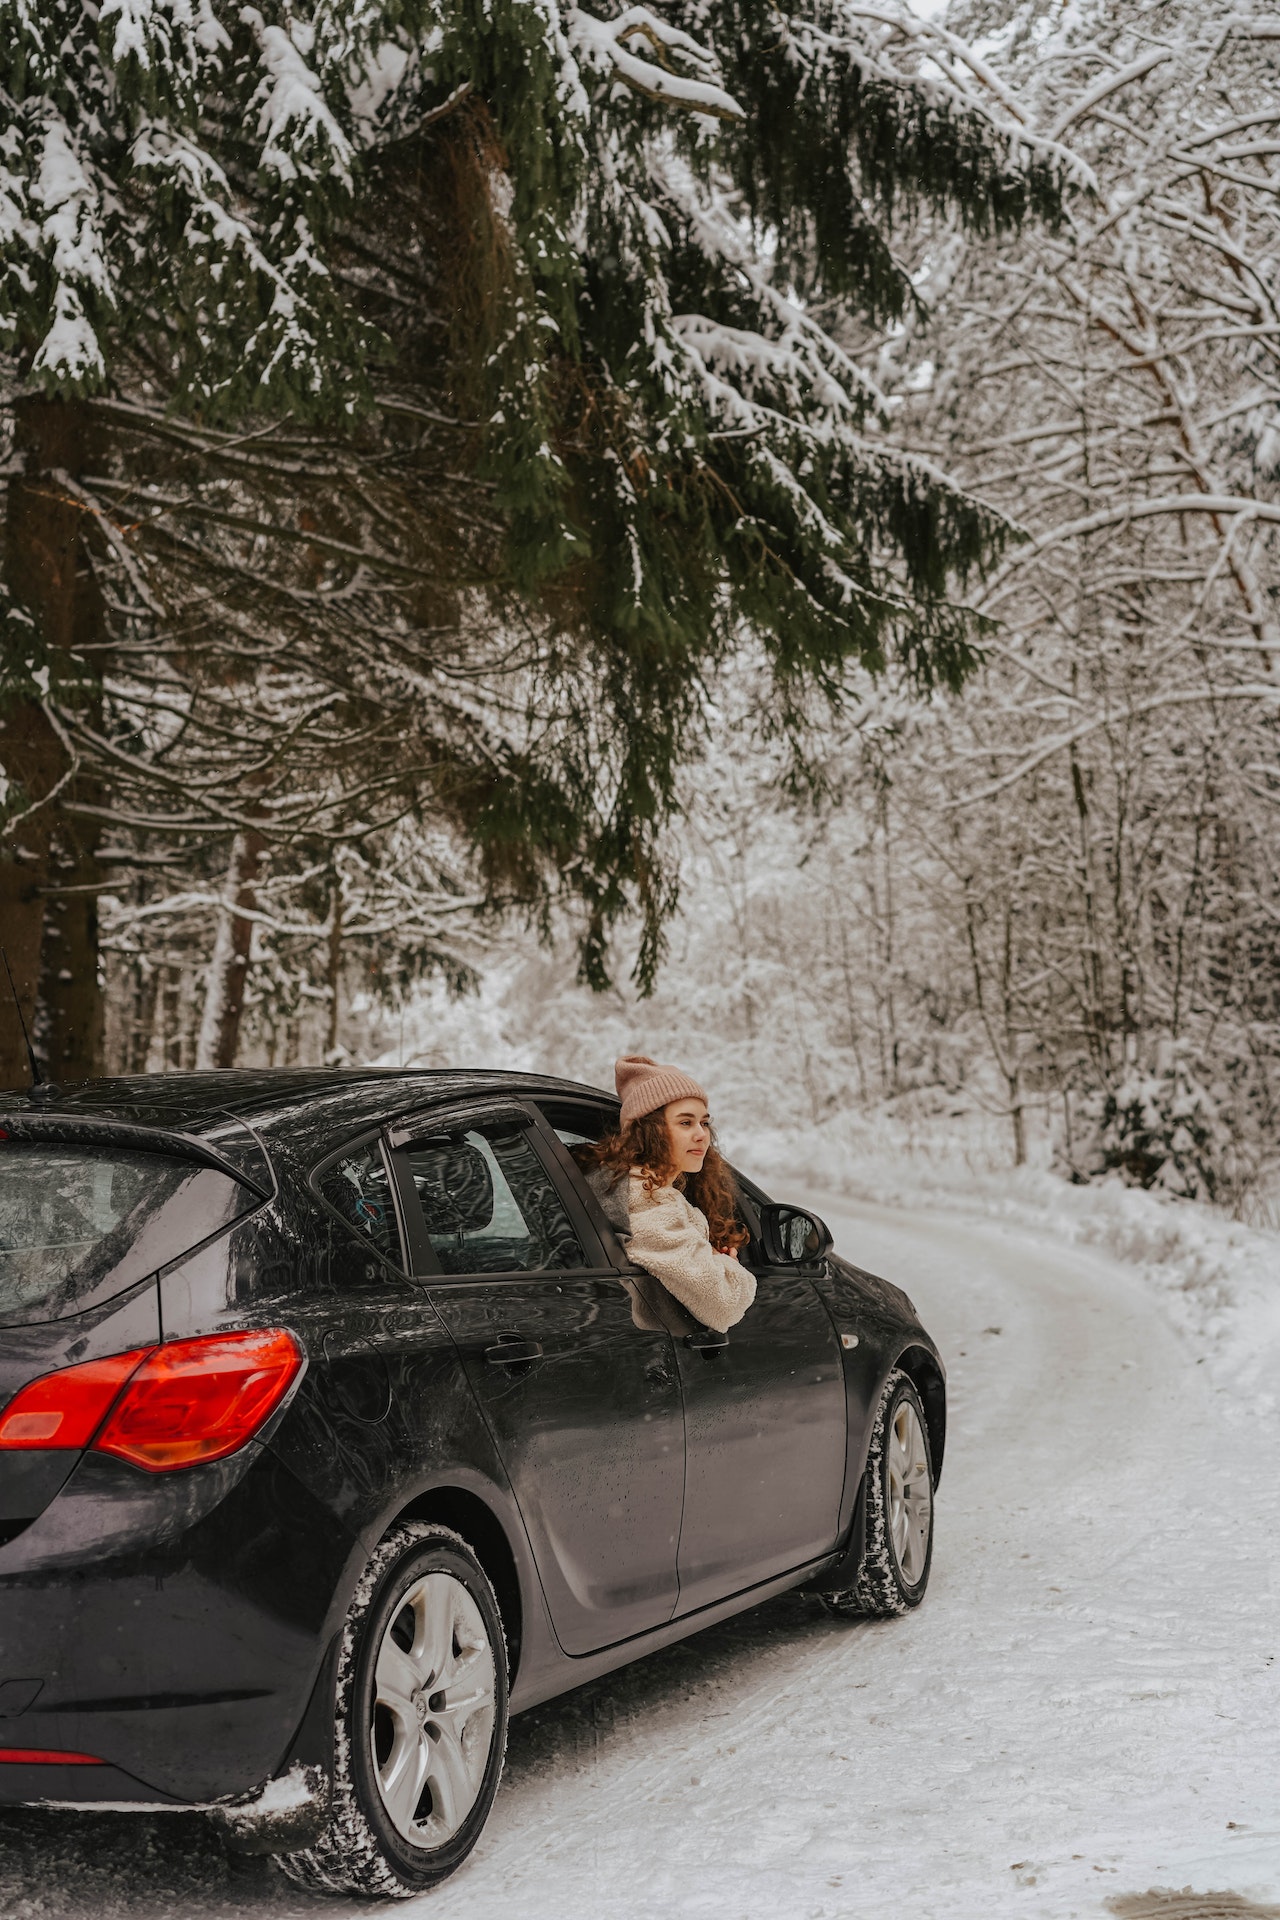 Как следить за своим автомобилем в морозы?